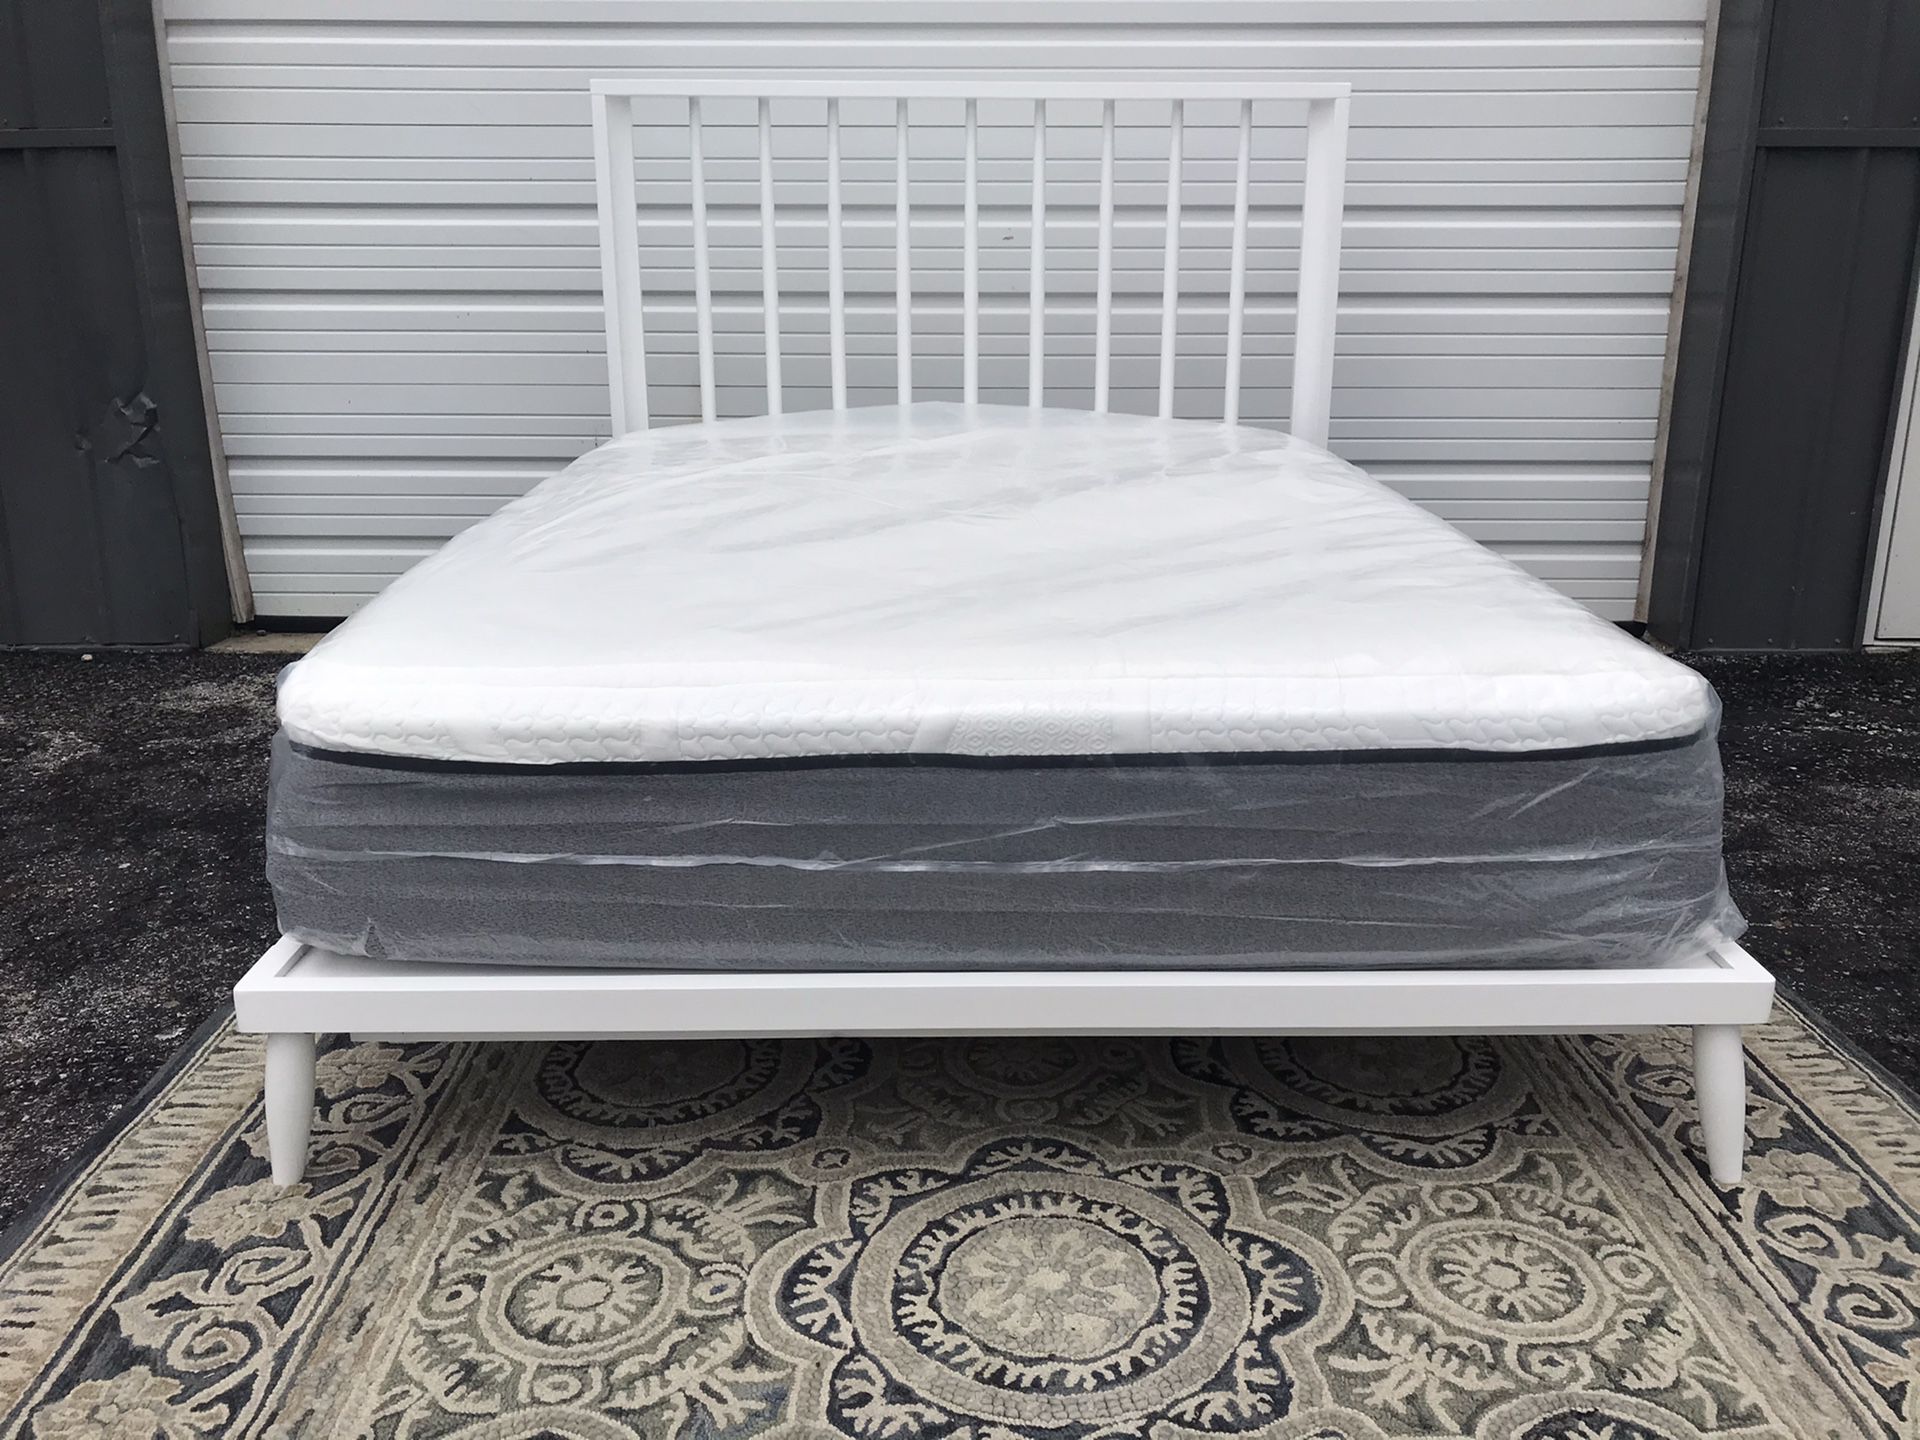 New QUEEN size modern platform bed frame and 14” ultra plush cool gel memory foam mattress